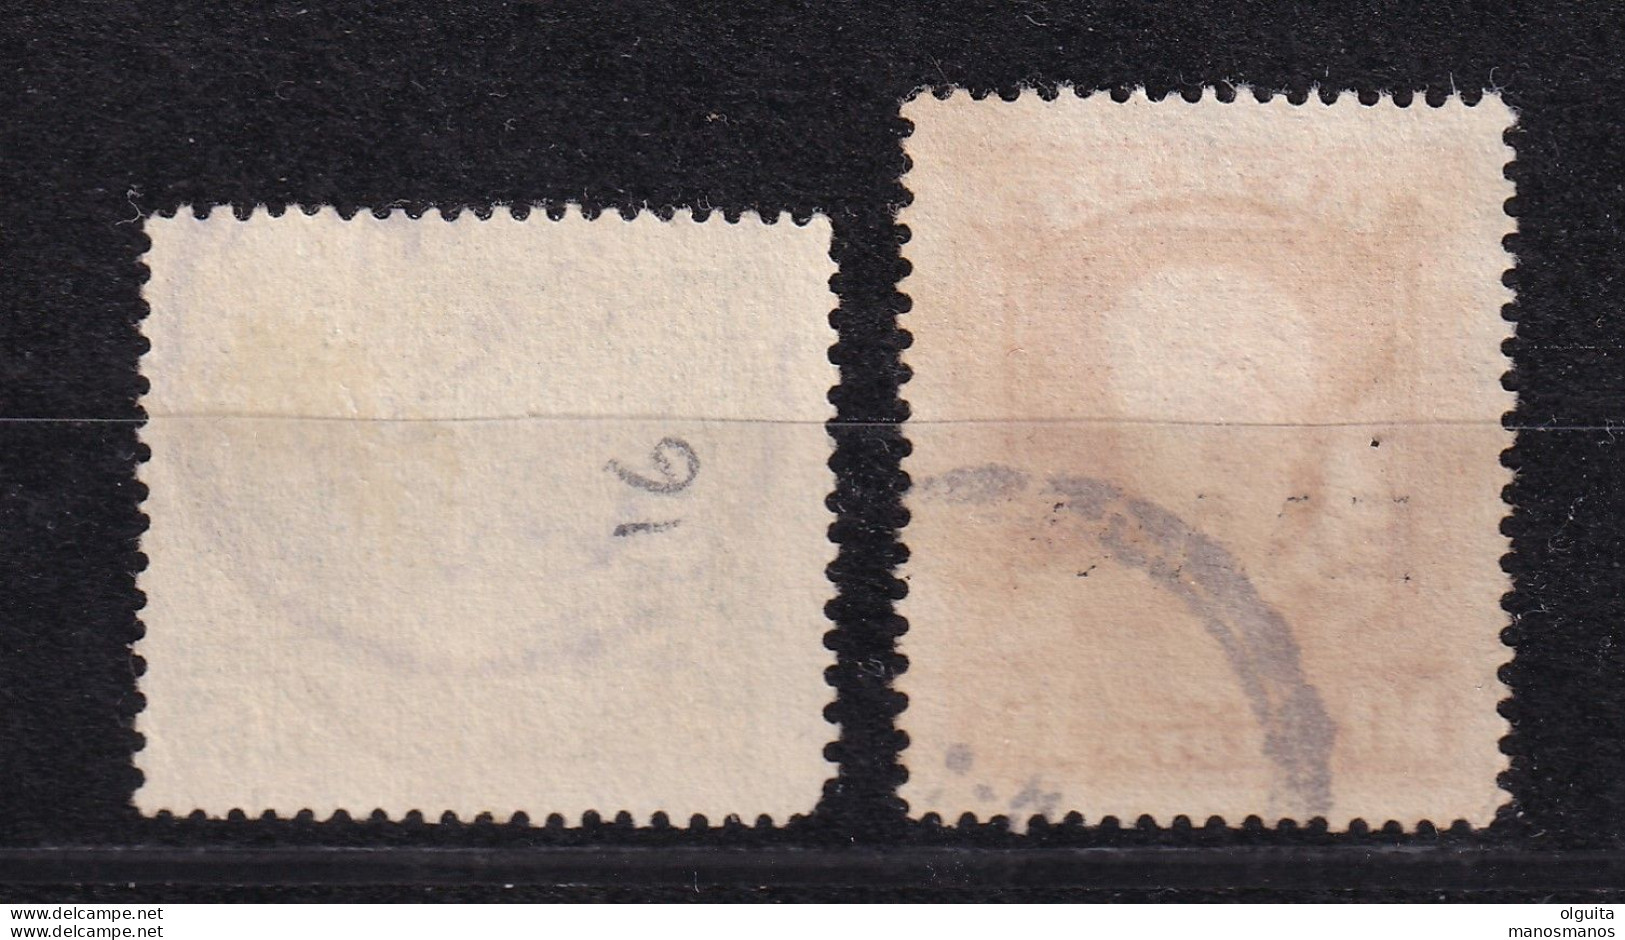 DCPGR 076 - CRETE RURAL Posthorn Cancels - Nr 16(BAMOS) On 2 Crete Ellas Stamps - Catalogue Hellas 15 EUR X 2 - Crete